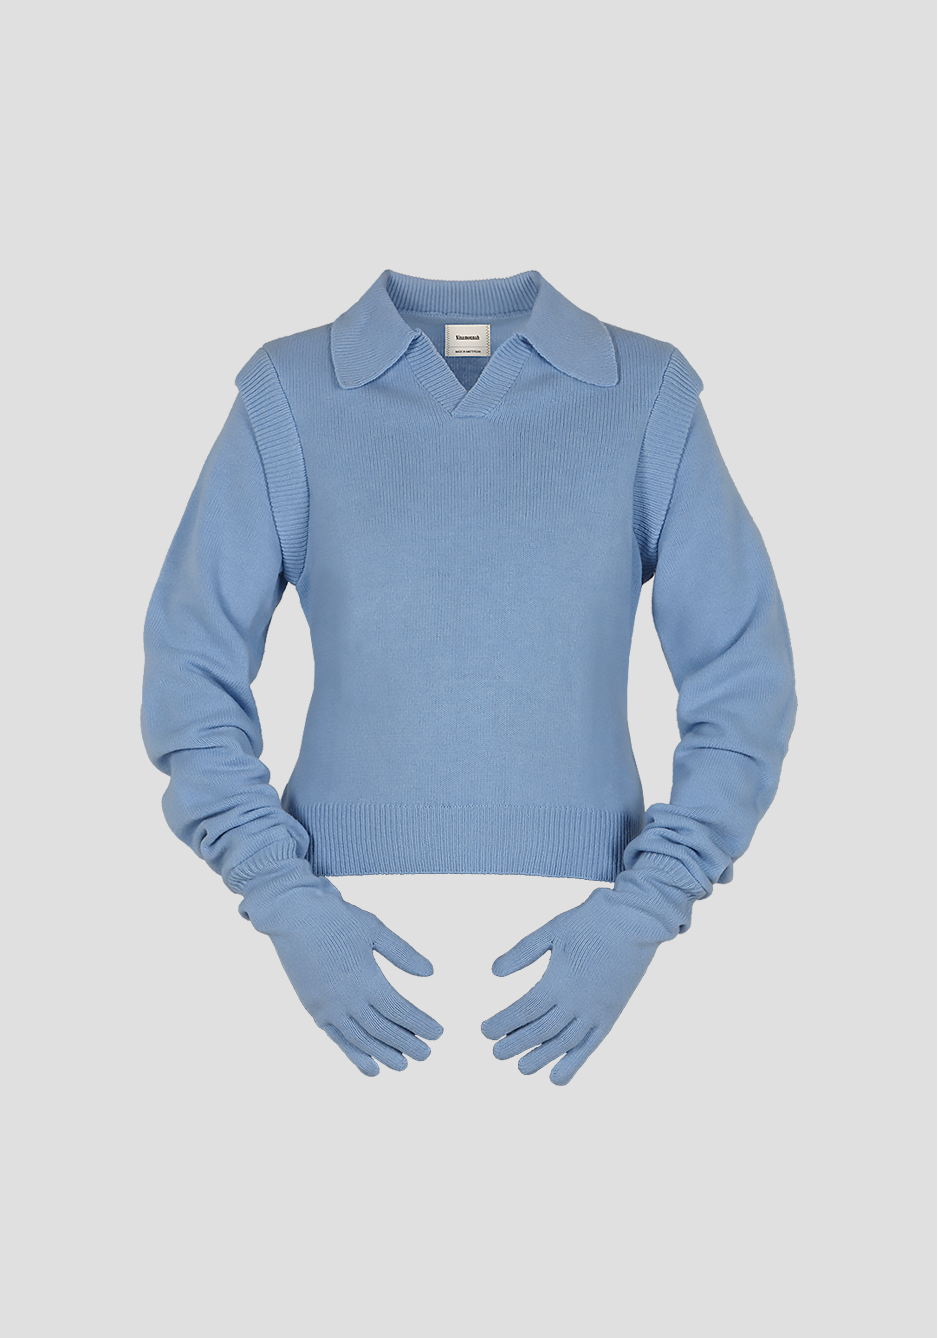 Knight Sweater in Office Blue